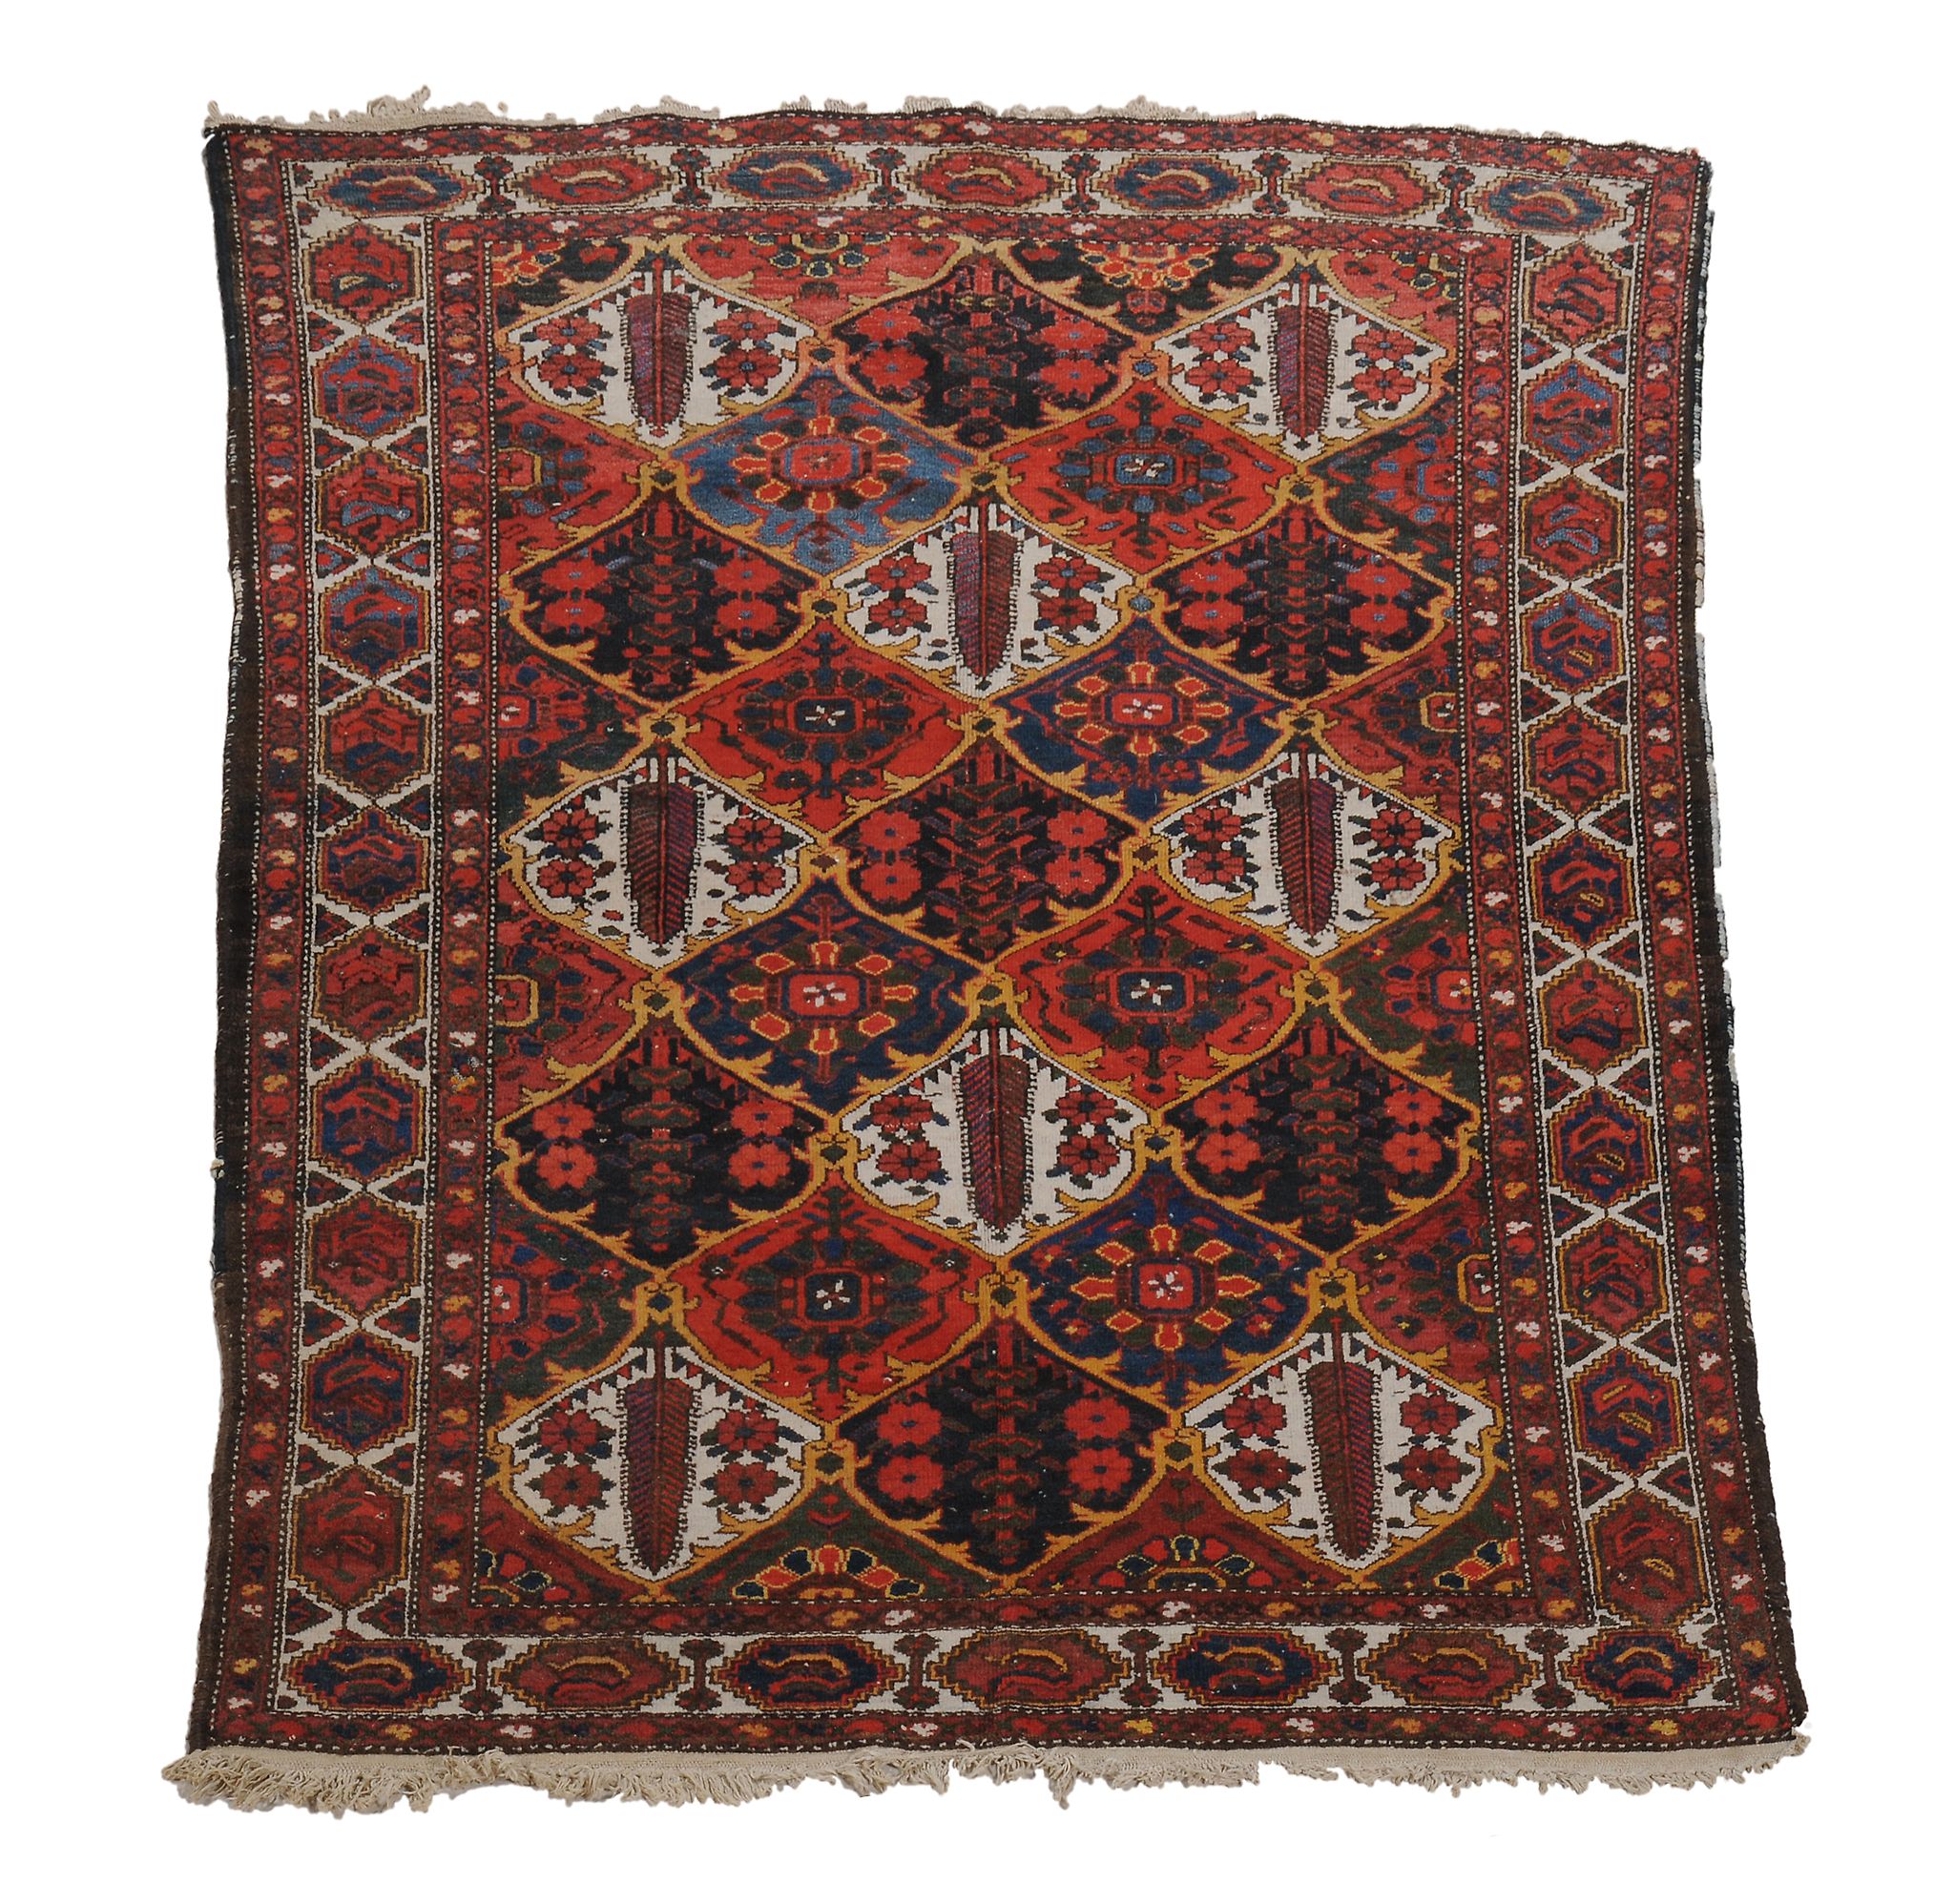 A Bakhtiar rug , approximately 204 x 151cm  A Bakhtiar rug  , approximately 204 x 151cm view on